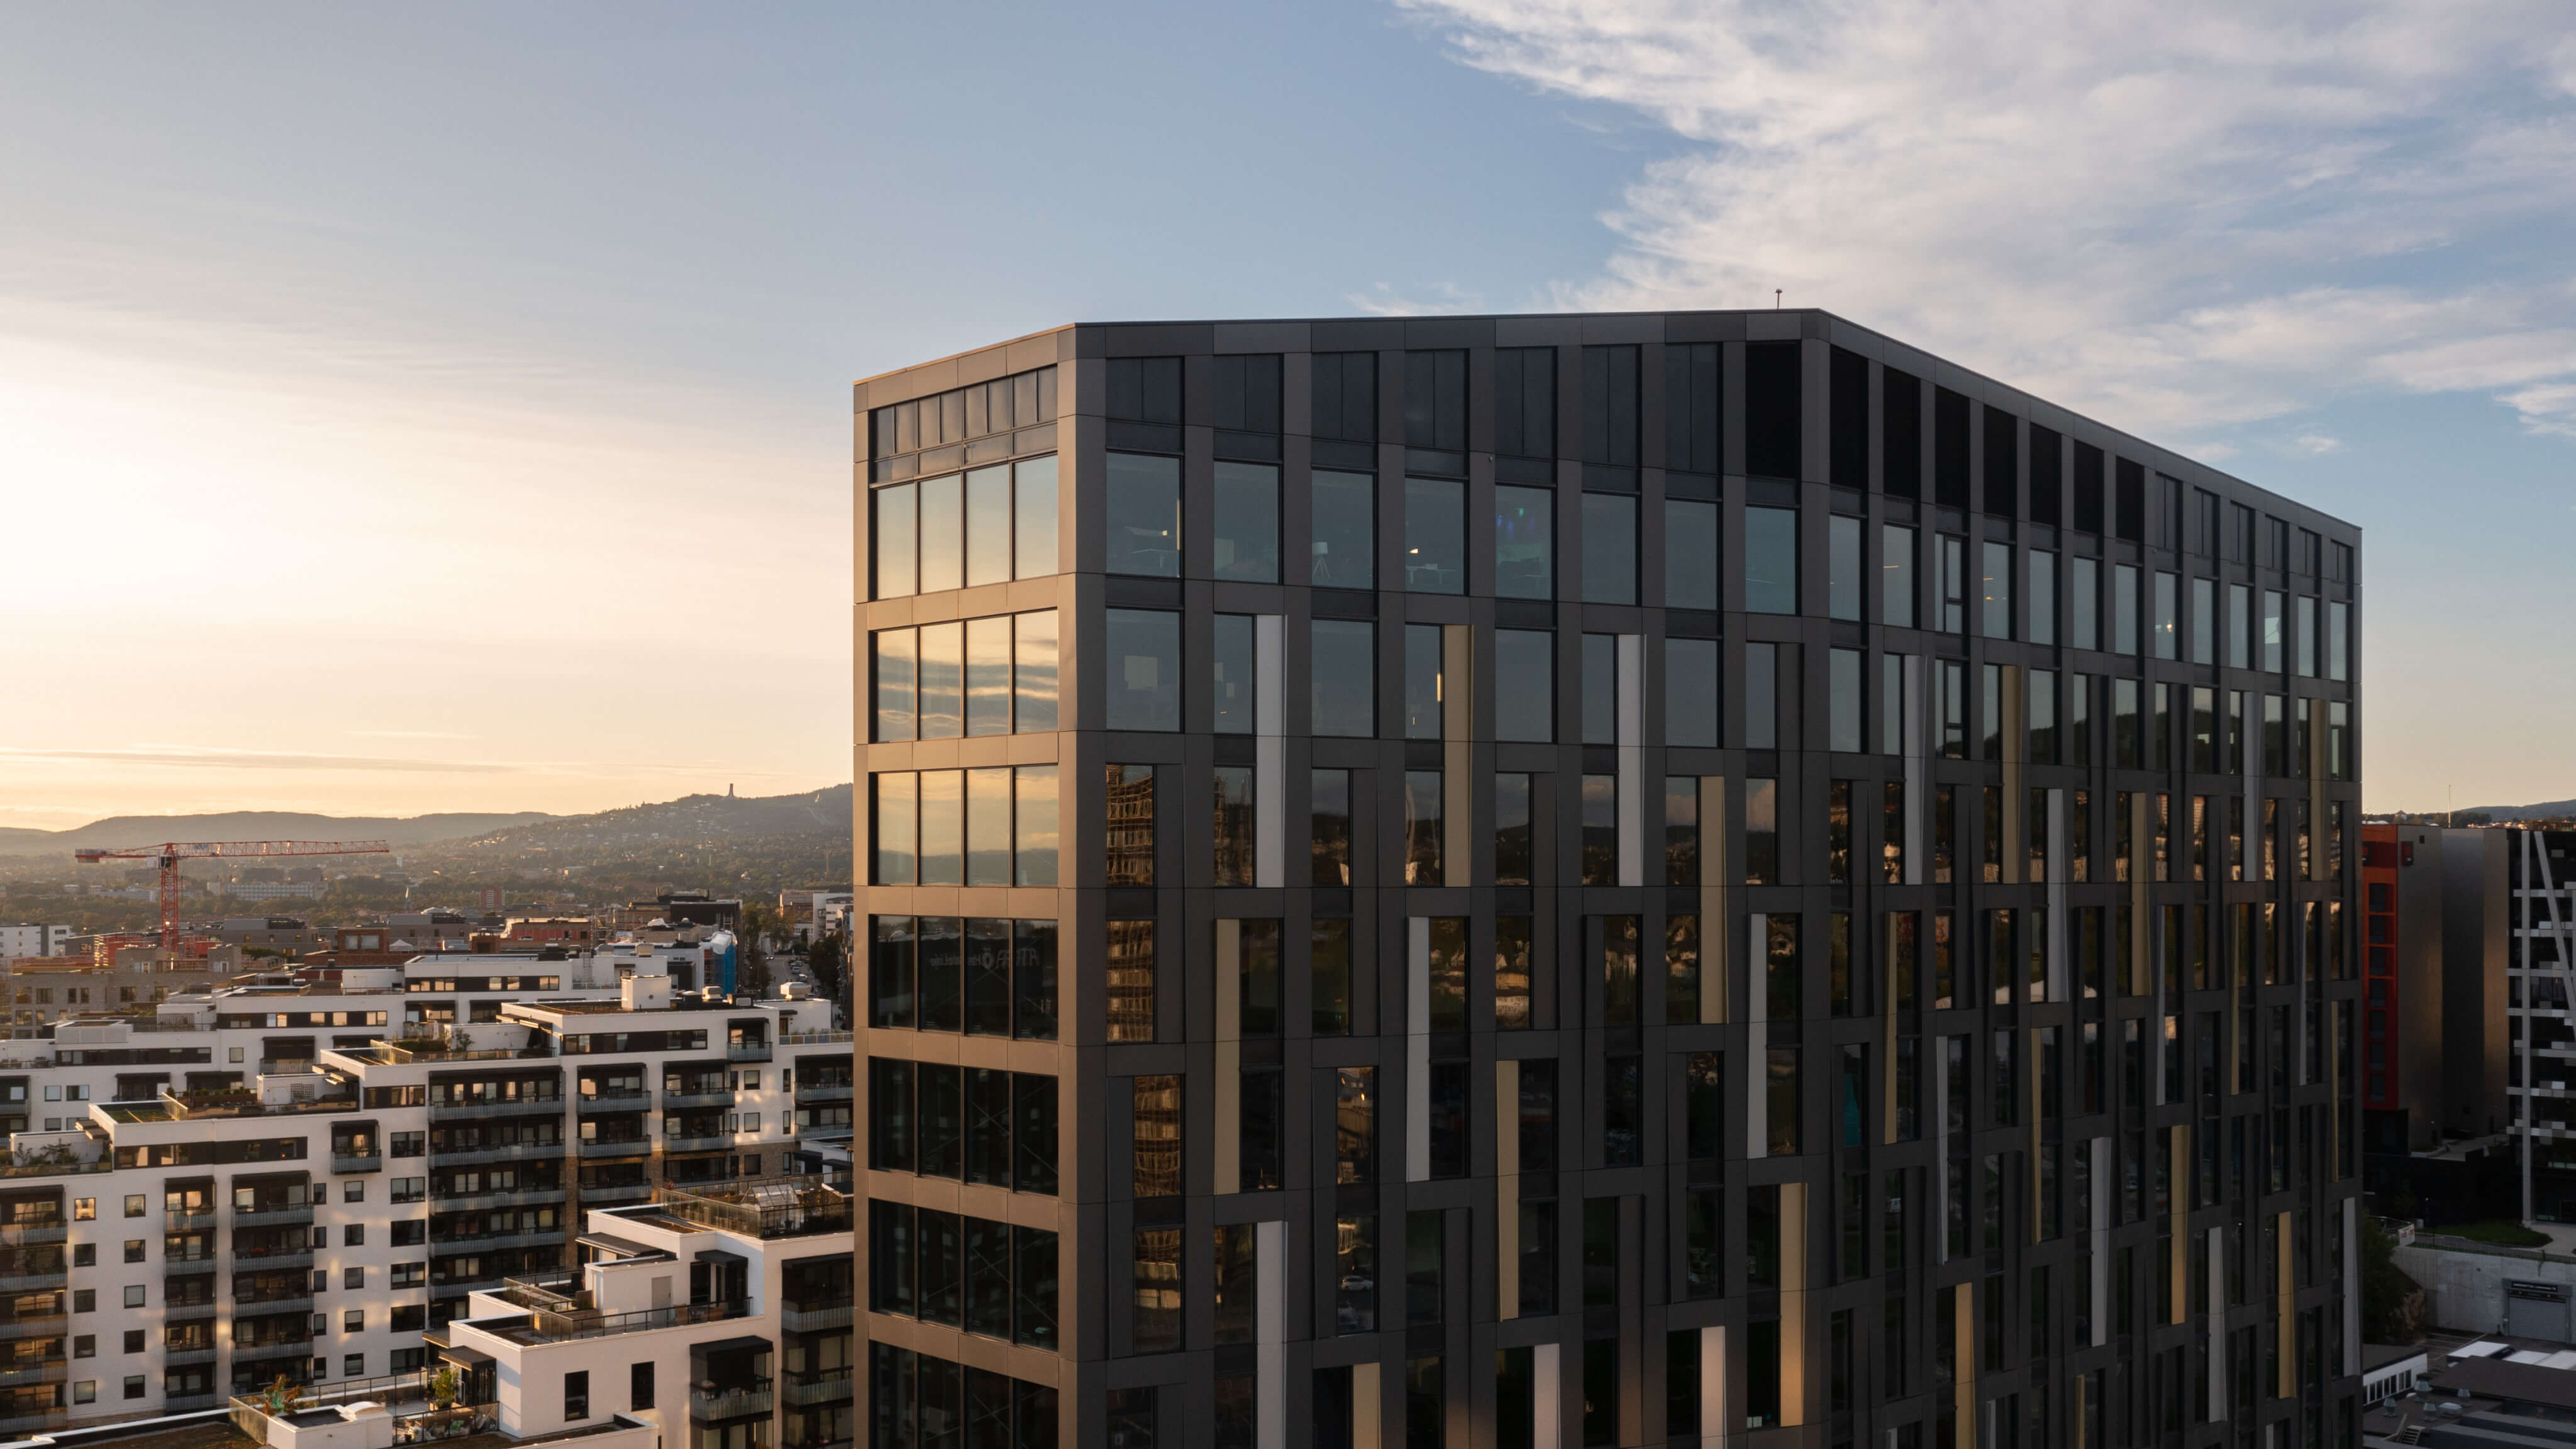 Bilde av Parallell-bygningen, et moderne kontorbygg med en distinkt, stilig arkitektur og glatte glassfasader som reflekterer det urbane landskapet rundt.